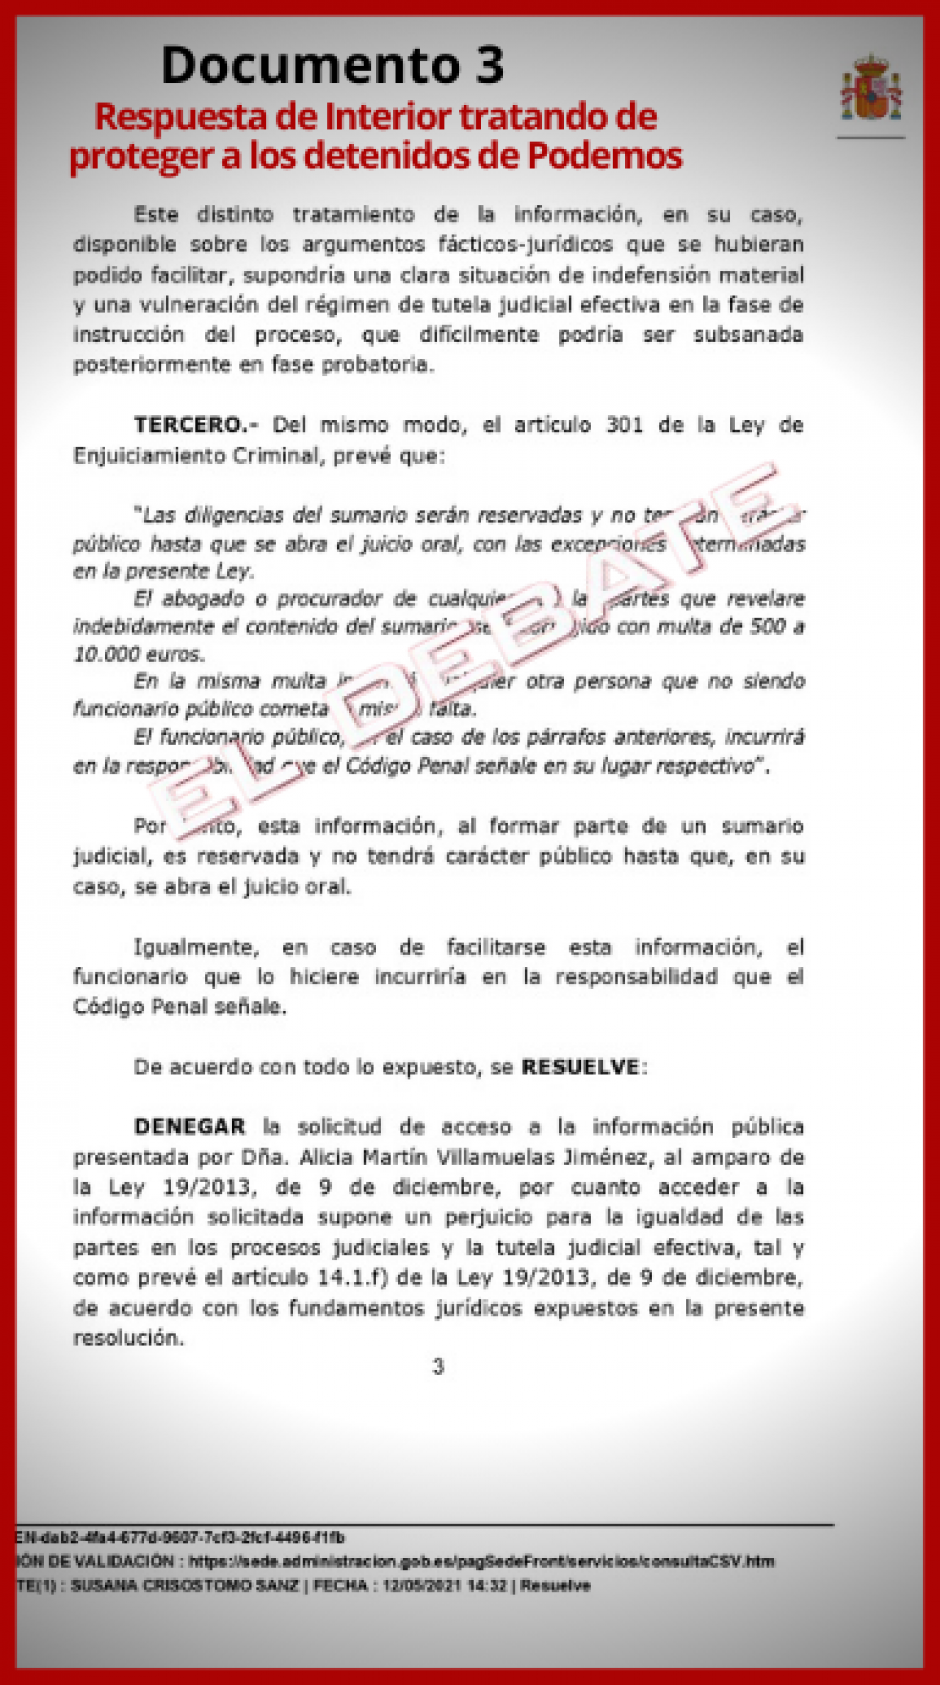 Documento 3 Respuesta de Interior protegiendo a los detenidos de Podemos